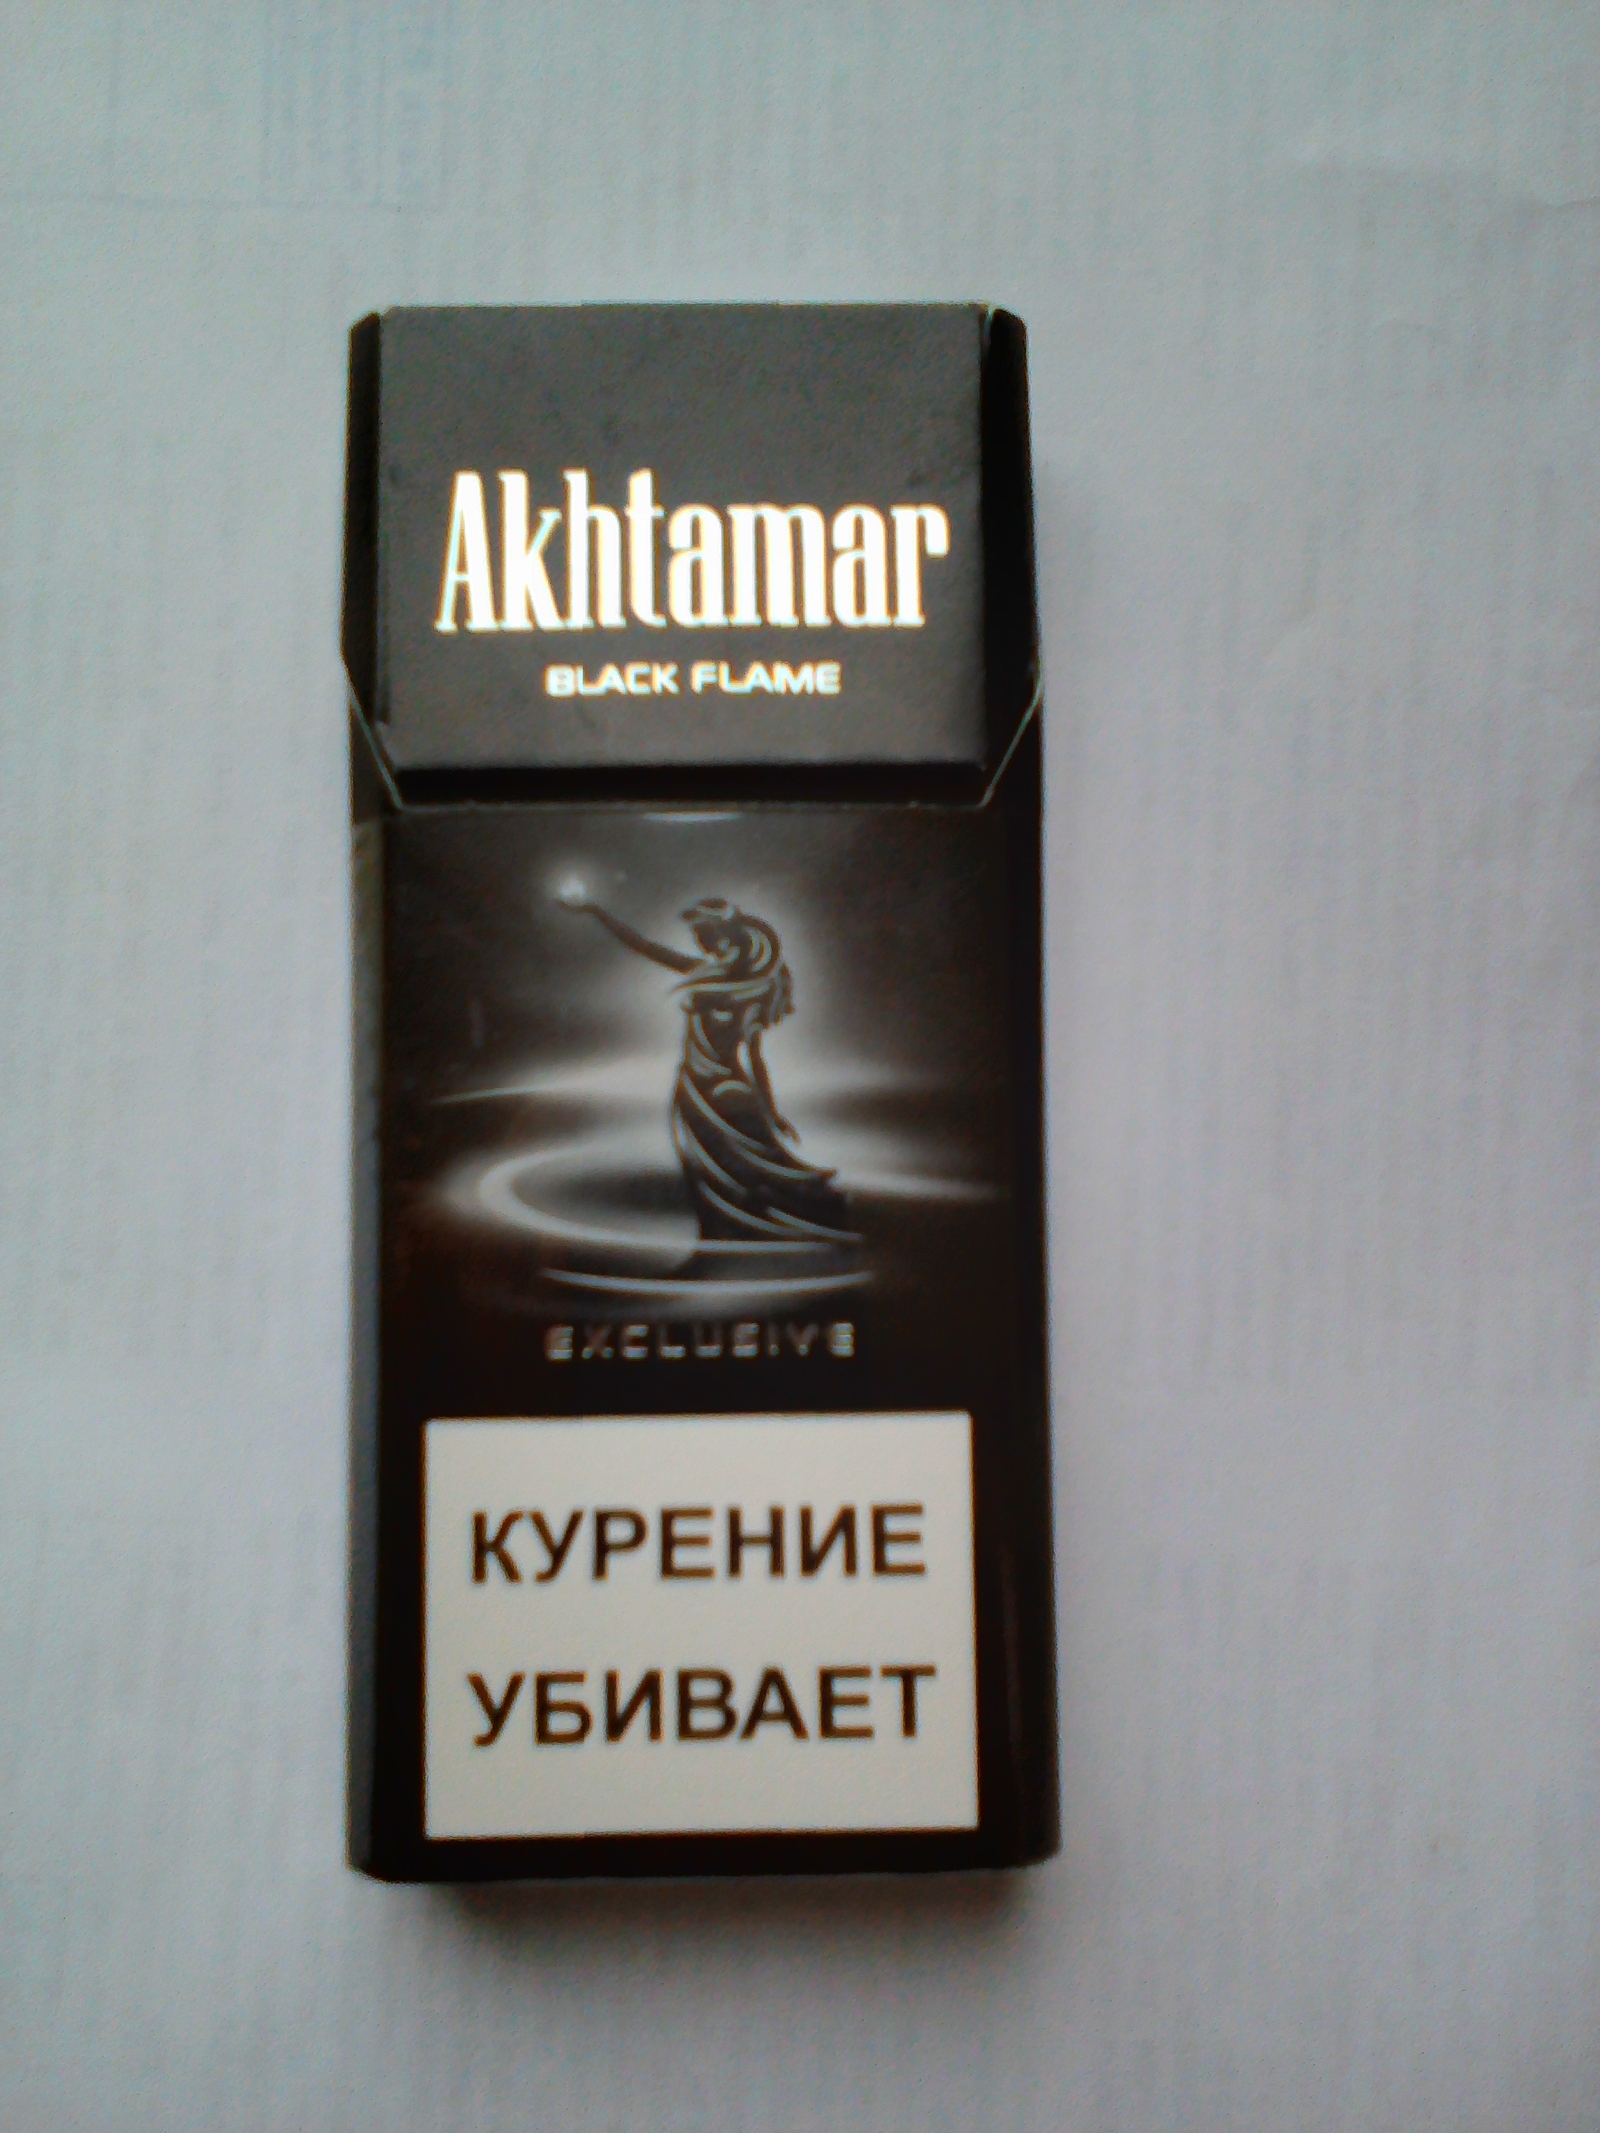 Купить армянские сигареты в интернет. Сигареты Akhtamar Black Flame. Армянские сигареты Ахтамар Классик. Сигареты Akhtamar Classic. Сигареты Классик Армения.